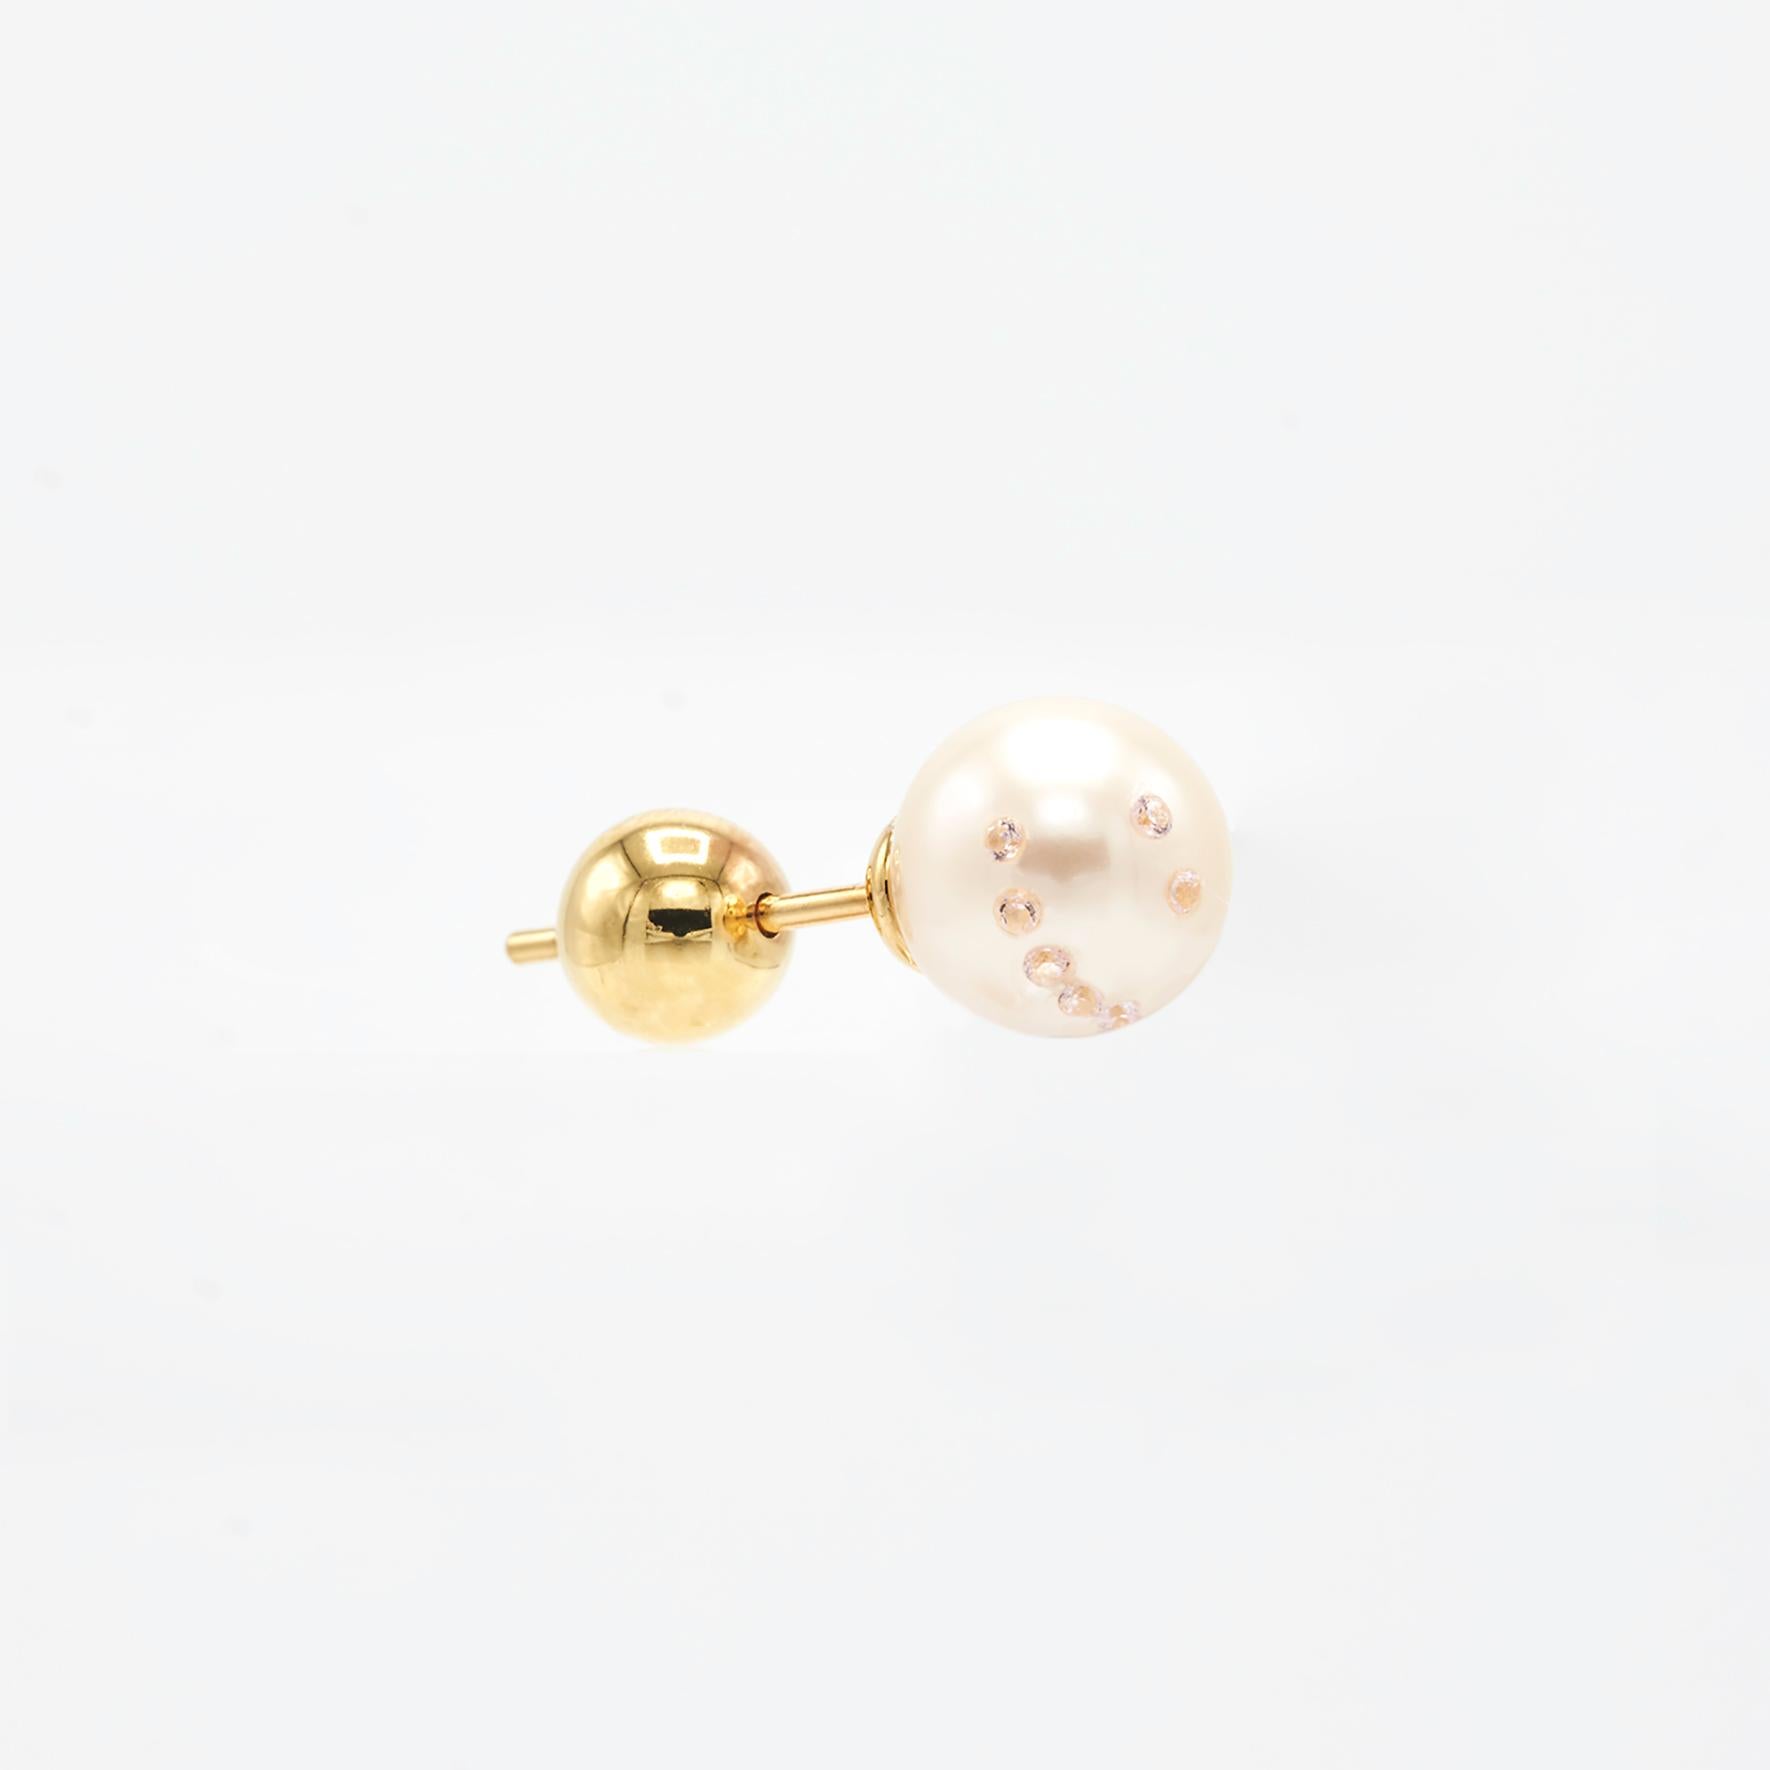 Boucles d'oreilles perles rondes visage souriant avec zircon cubique

Dimensions : Perle de 7 mm
Compositions : Argent Sterling 24 K plaques d'or/ Perle d'eau douce/ Zircone cubique.

VENDUES PAR PAIRES